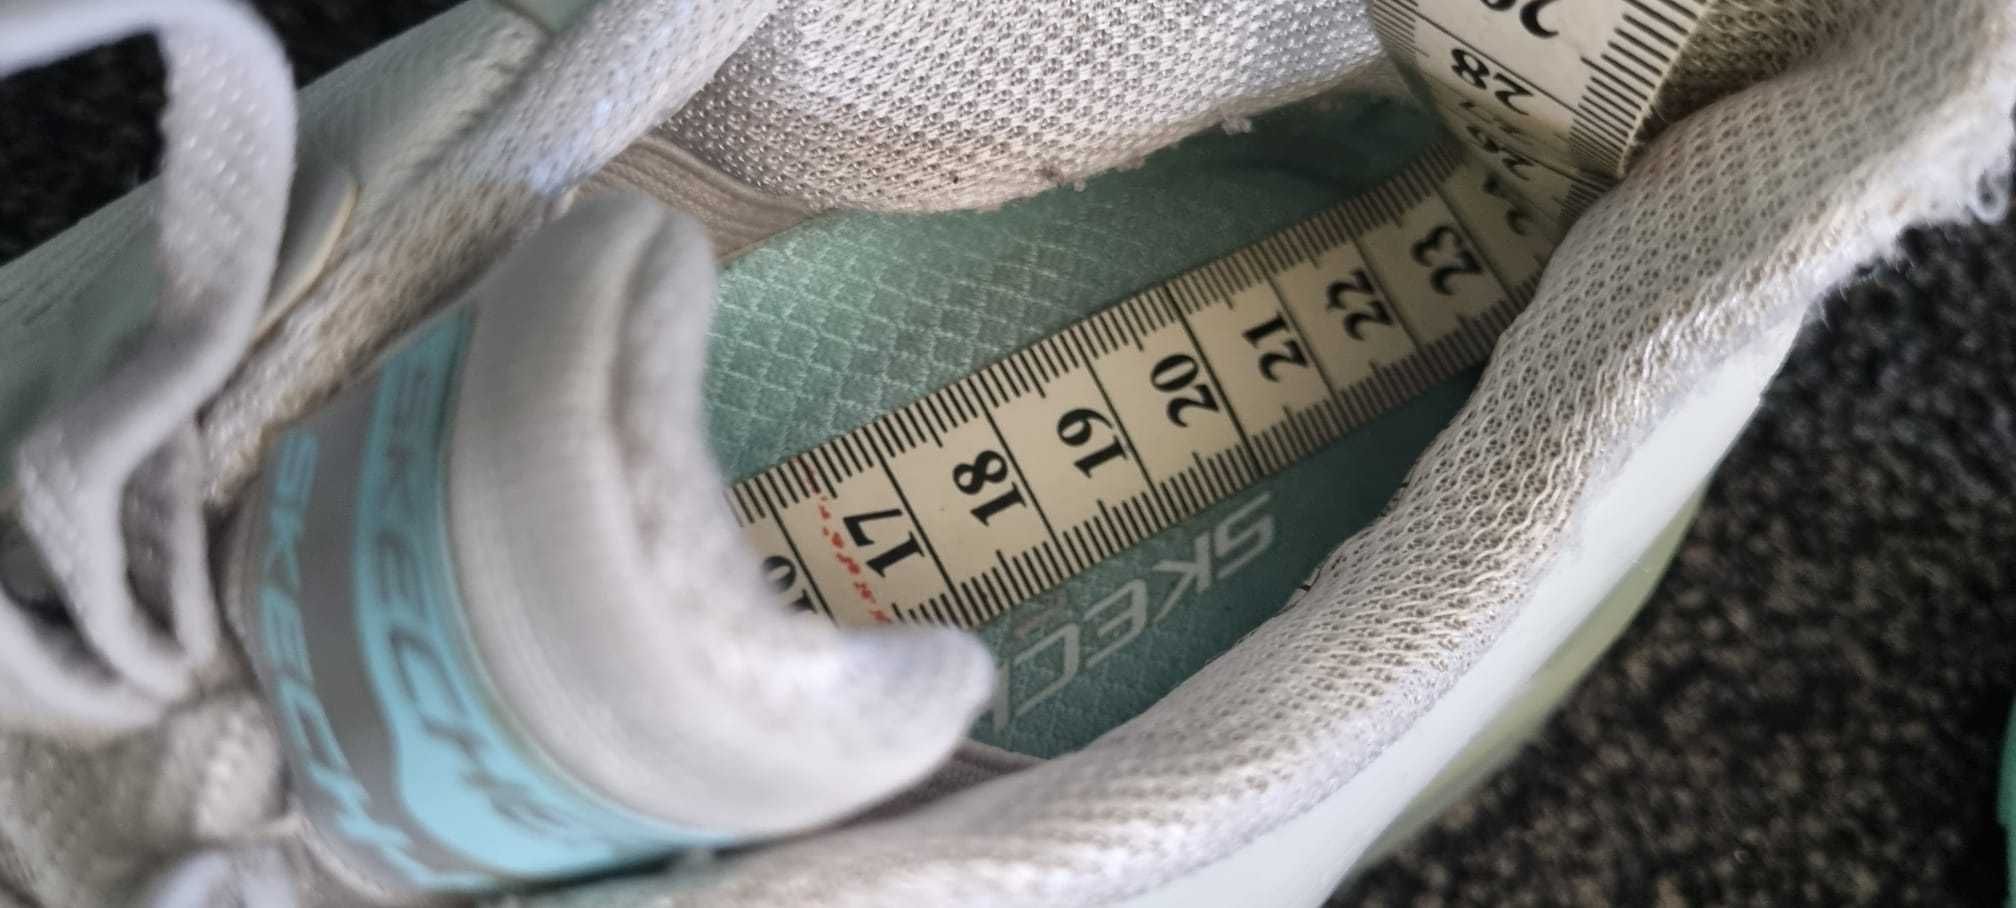 Adidasi Skeachers copii marime 34 (22.5 cm)